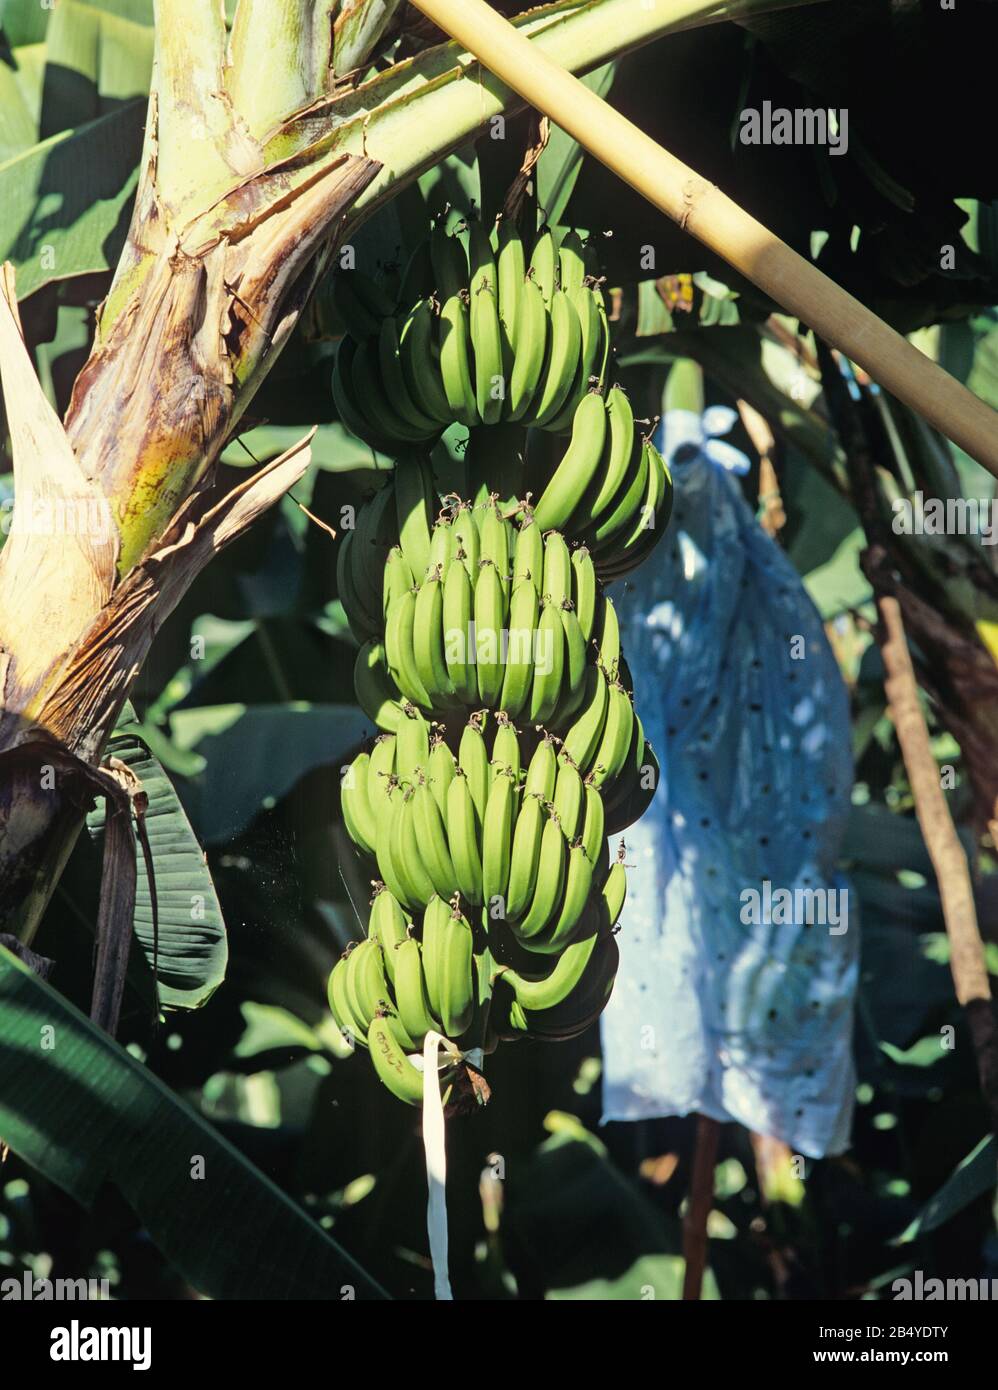 Plátanos verdes maduros en racimos de la planta con cubierta protectora de plástico quitada, Minanao, Filipinas, febrero Foto de stock